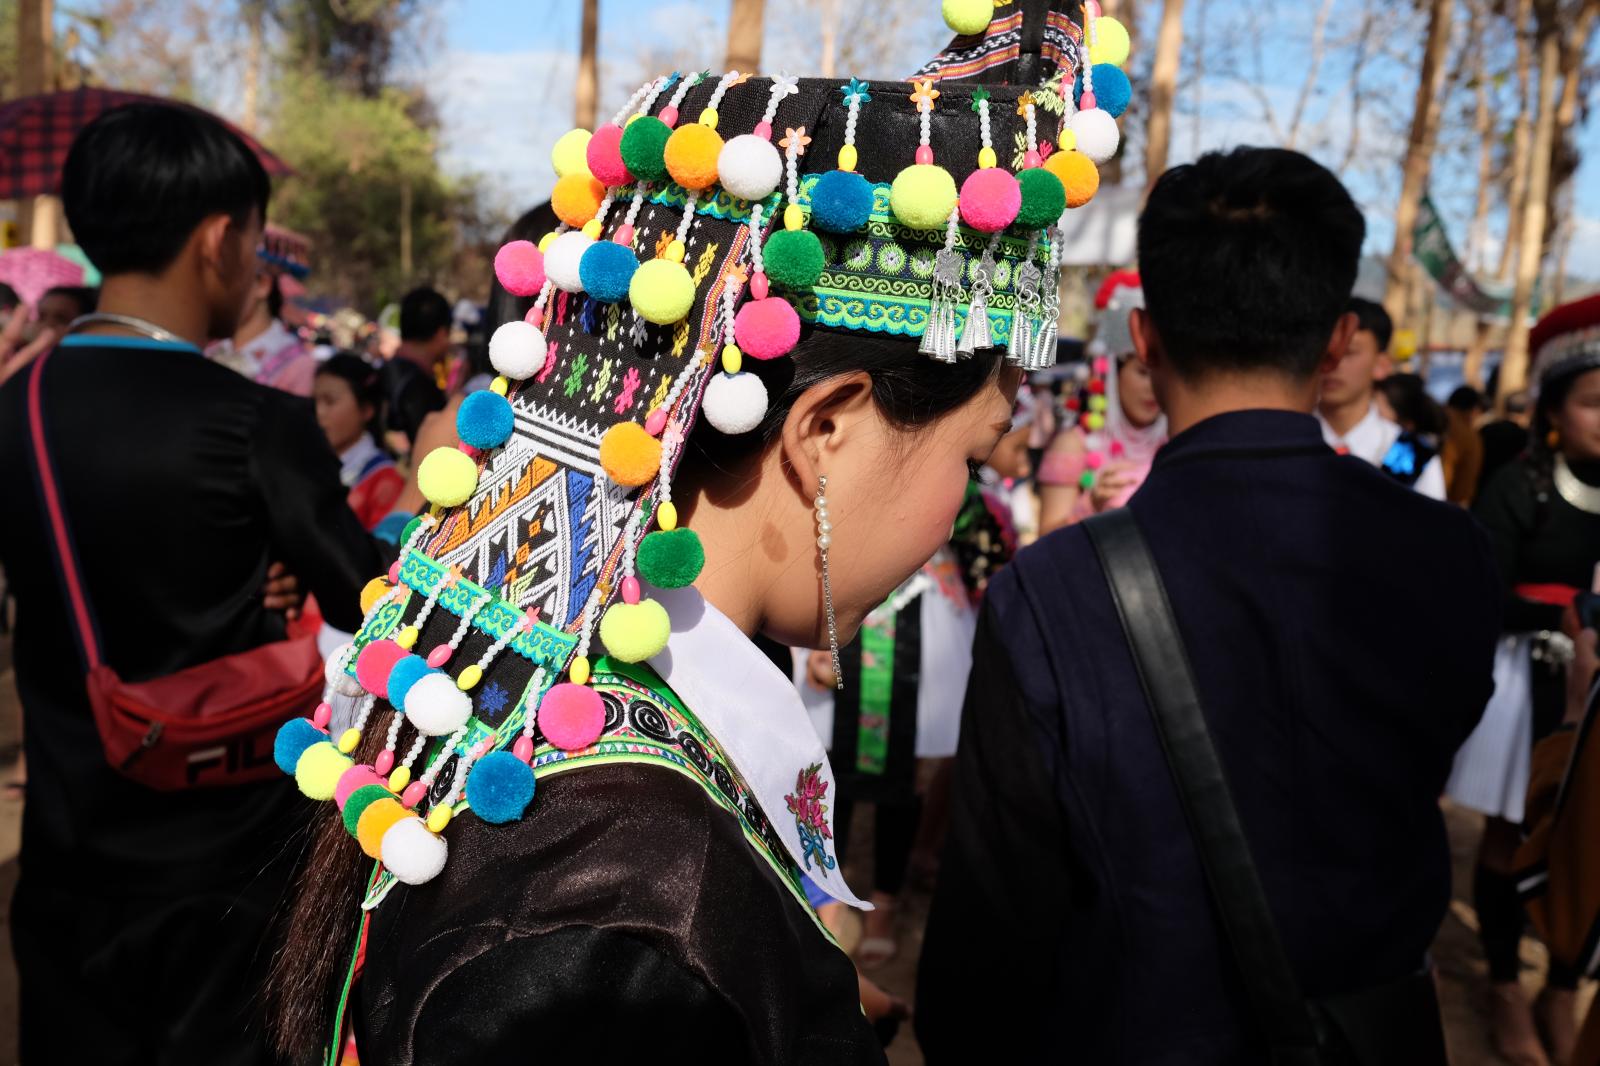 Hmong woman | Buy this image